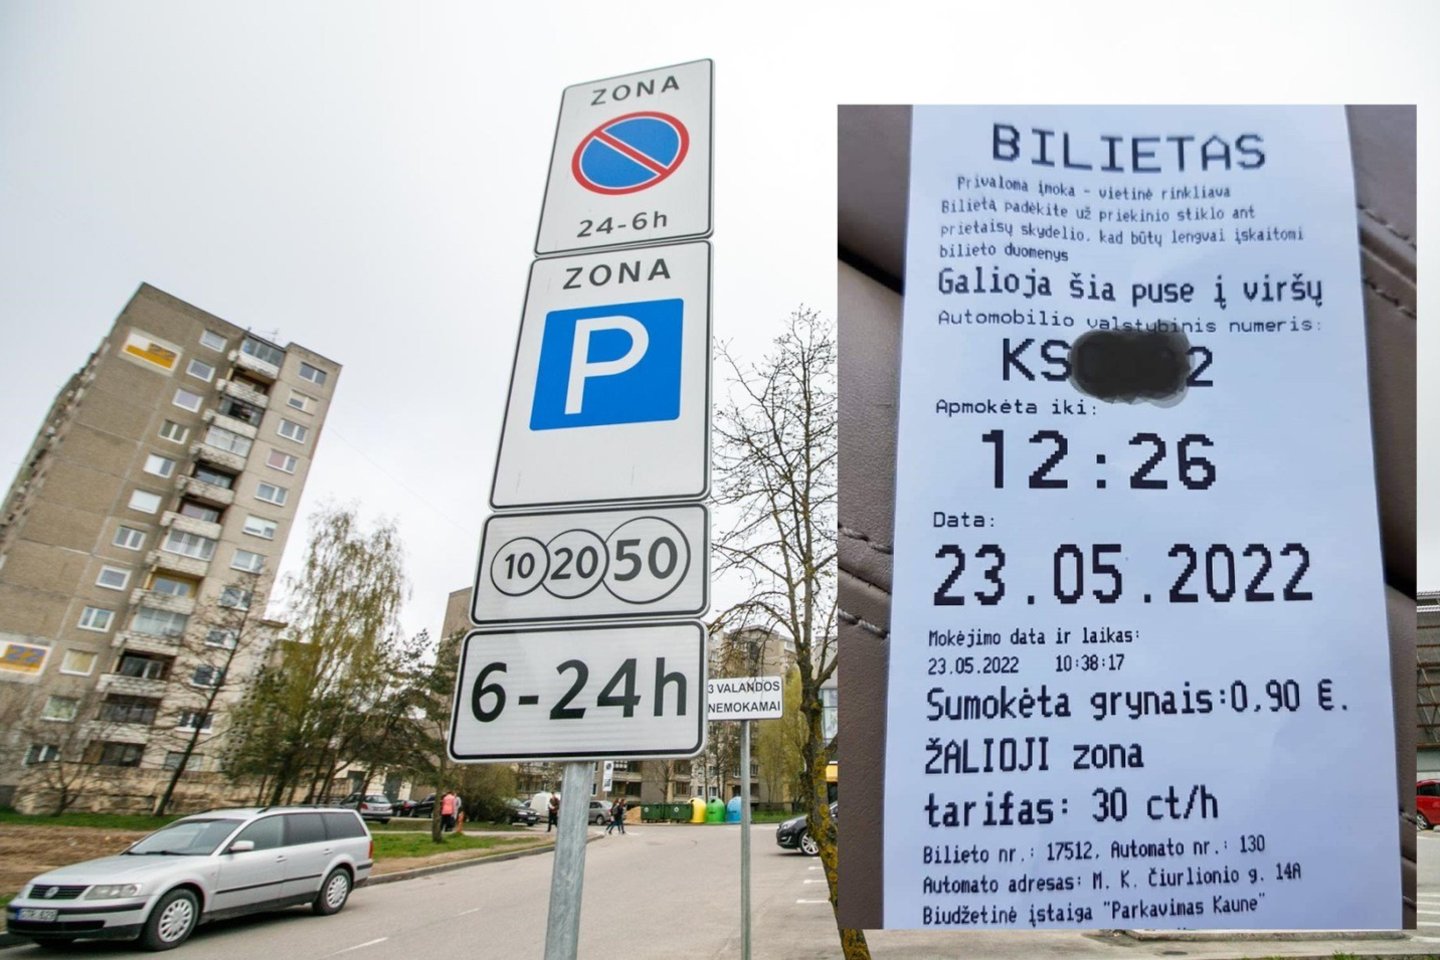 Prieš porą savaičių už automobilio vietą sumokėjęs kaunietis net nepastebėjo, kad parkavimo automatas išmušė bilietą su neteisinga informacija.<br>„Kas vyksta Kaune“ fotomontažas